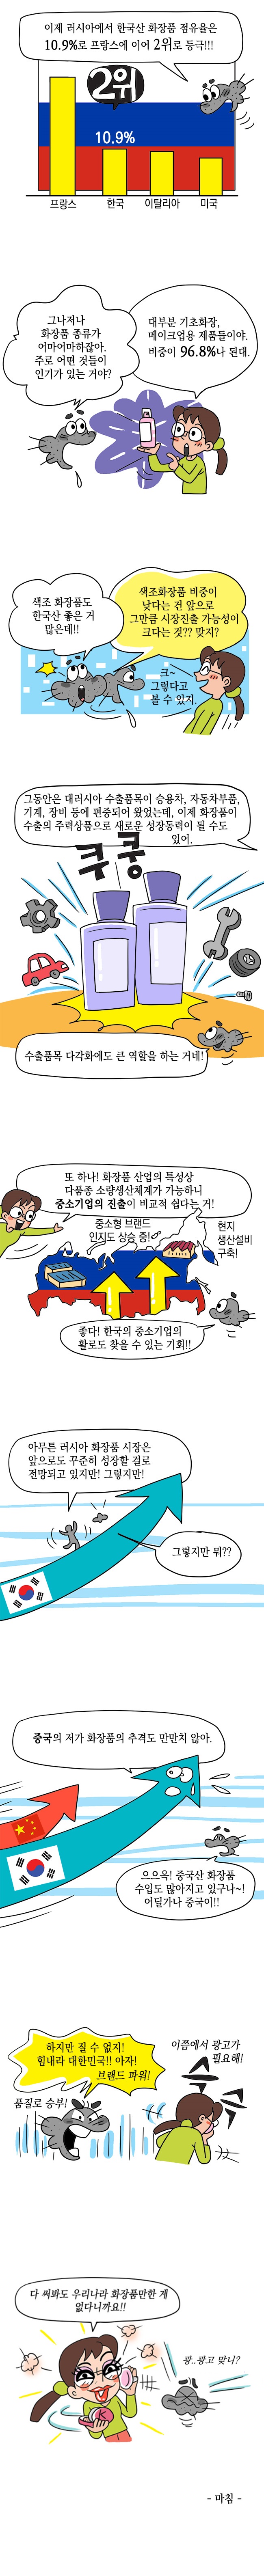 2019년 대러 화장품 수출 역대 최고치 기록 사진2